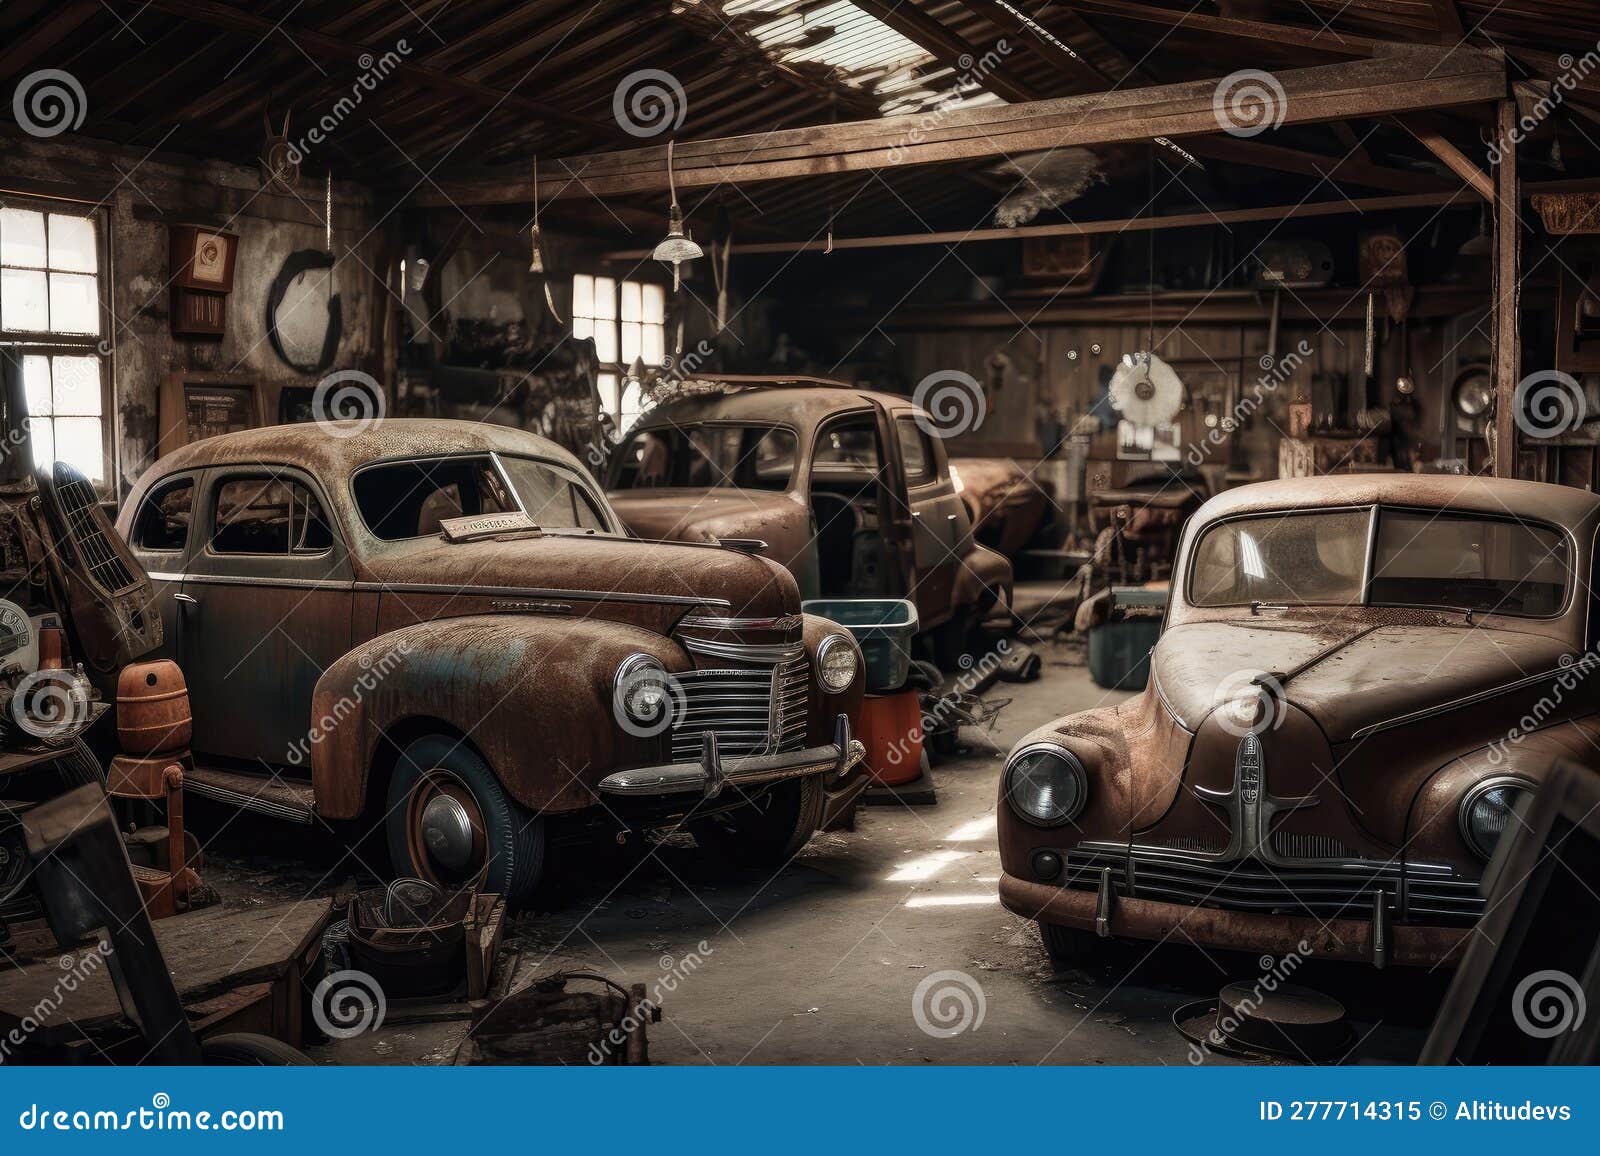 Eine Alte Garage Voller Oldtimer Aus Einer Anderen Zeit, Darunter